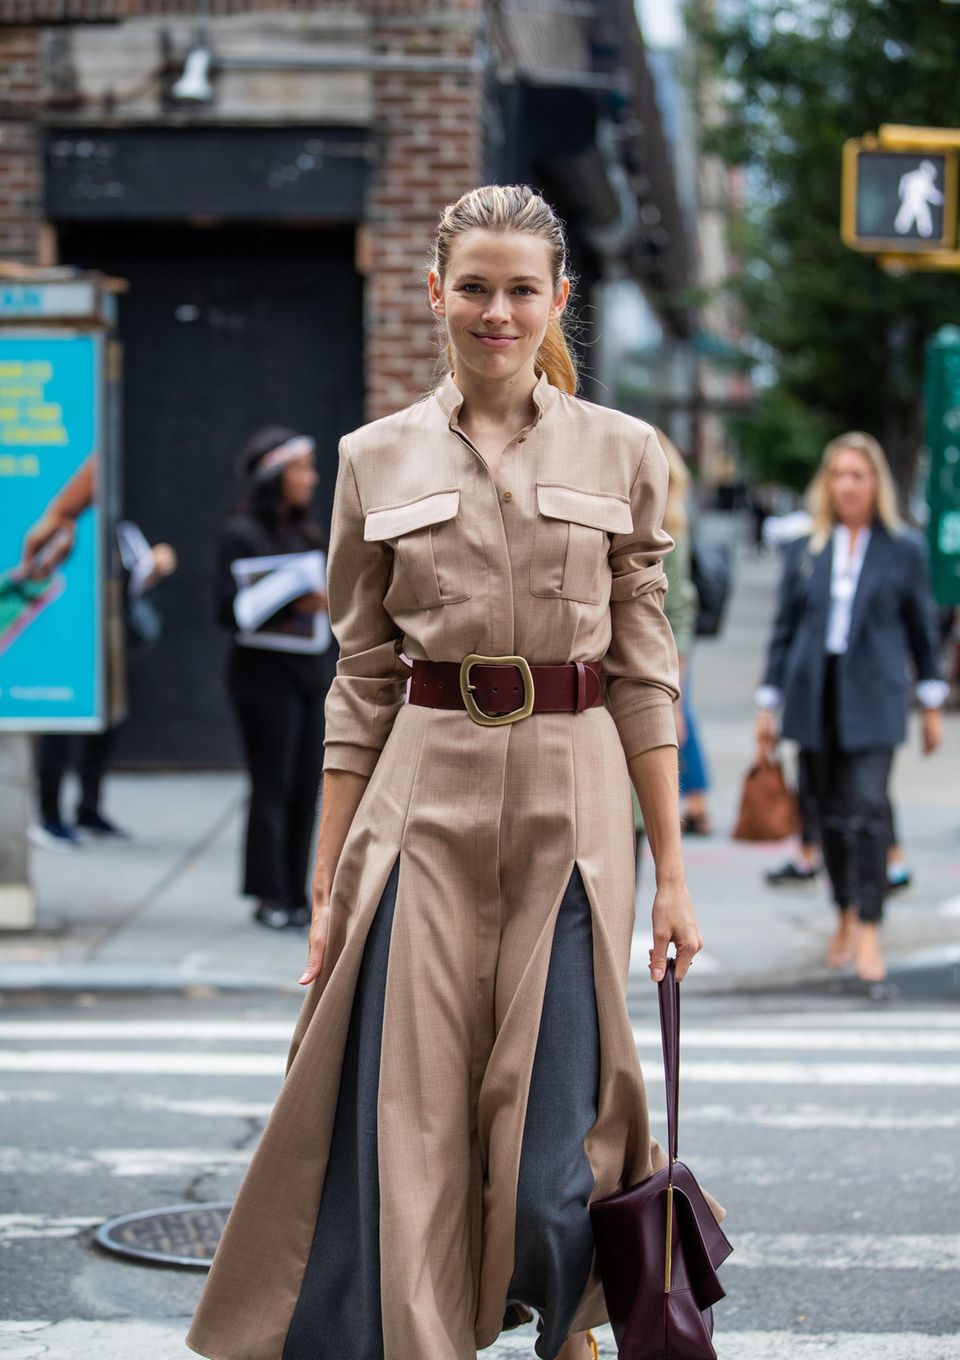 New York Fashion Week 2019: Frau mit Mantel auf der Strasse